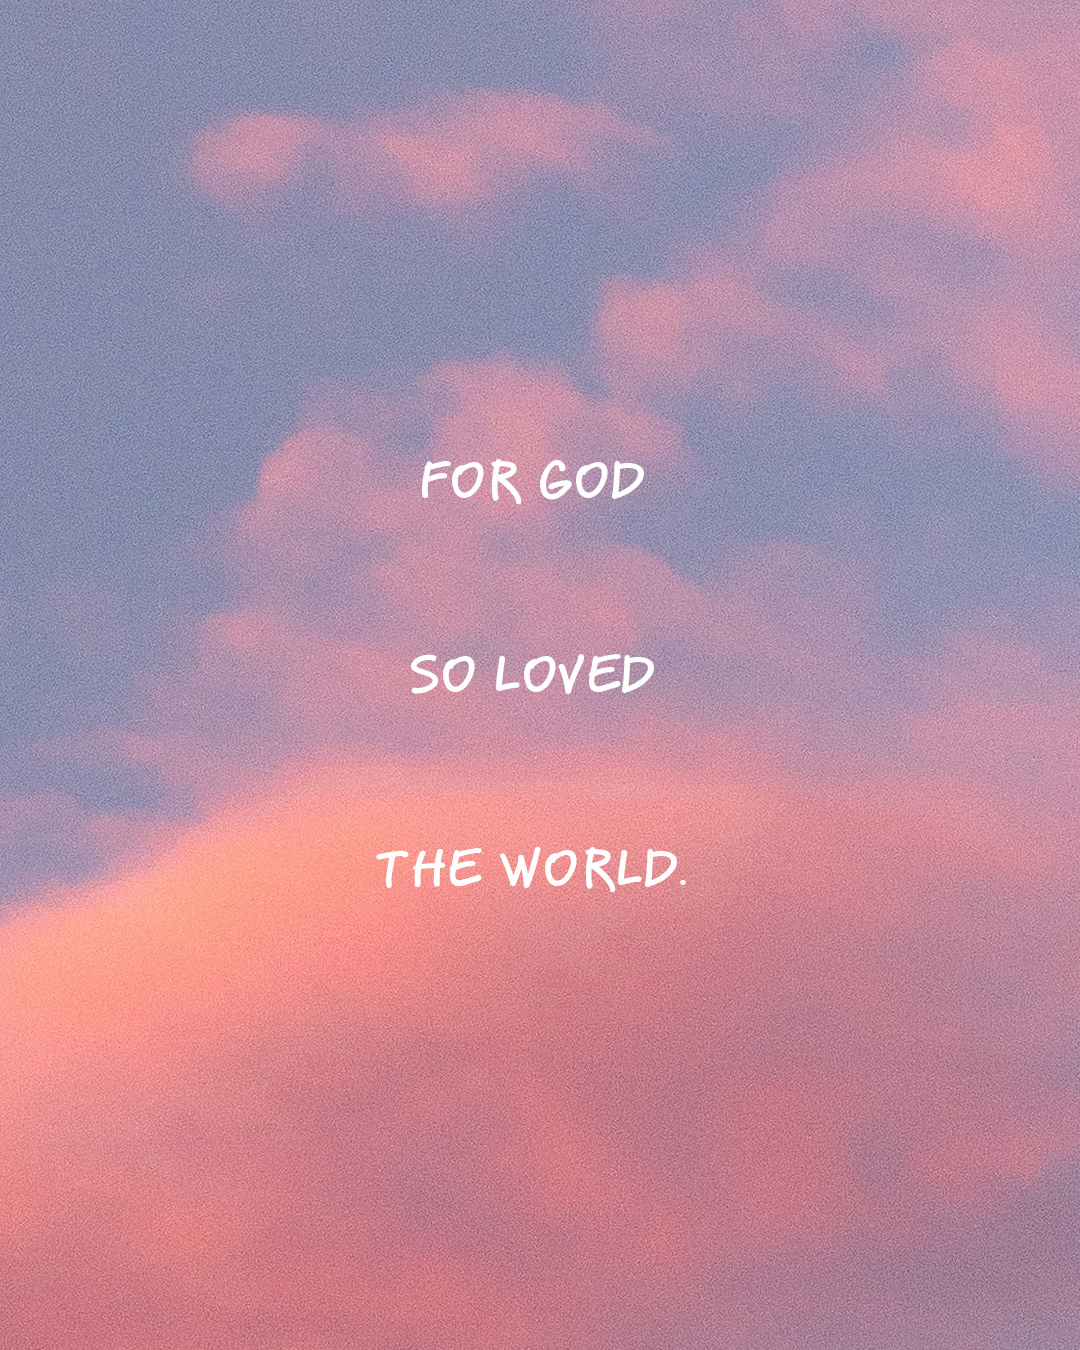 For God so loved the world.